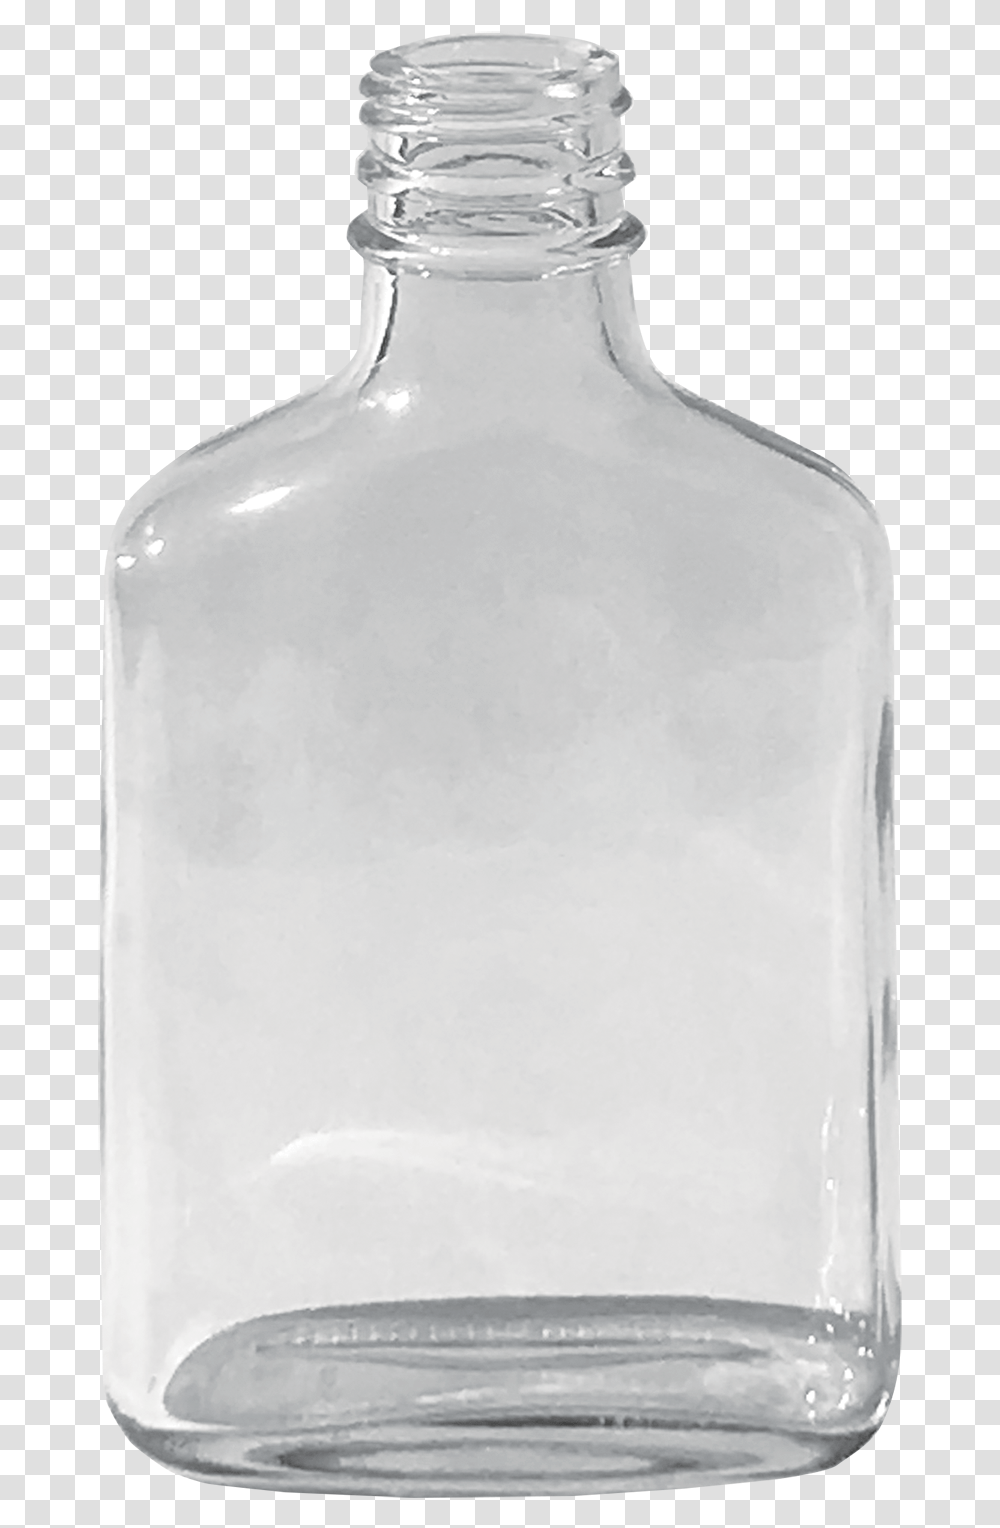 Aac Flask 200ml Flint Glass Bottle, Milk, Beverage, Drink, Jar Transparent Png